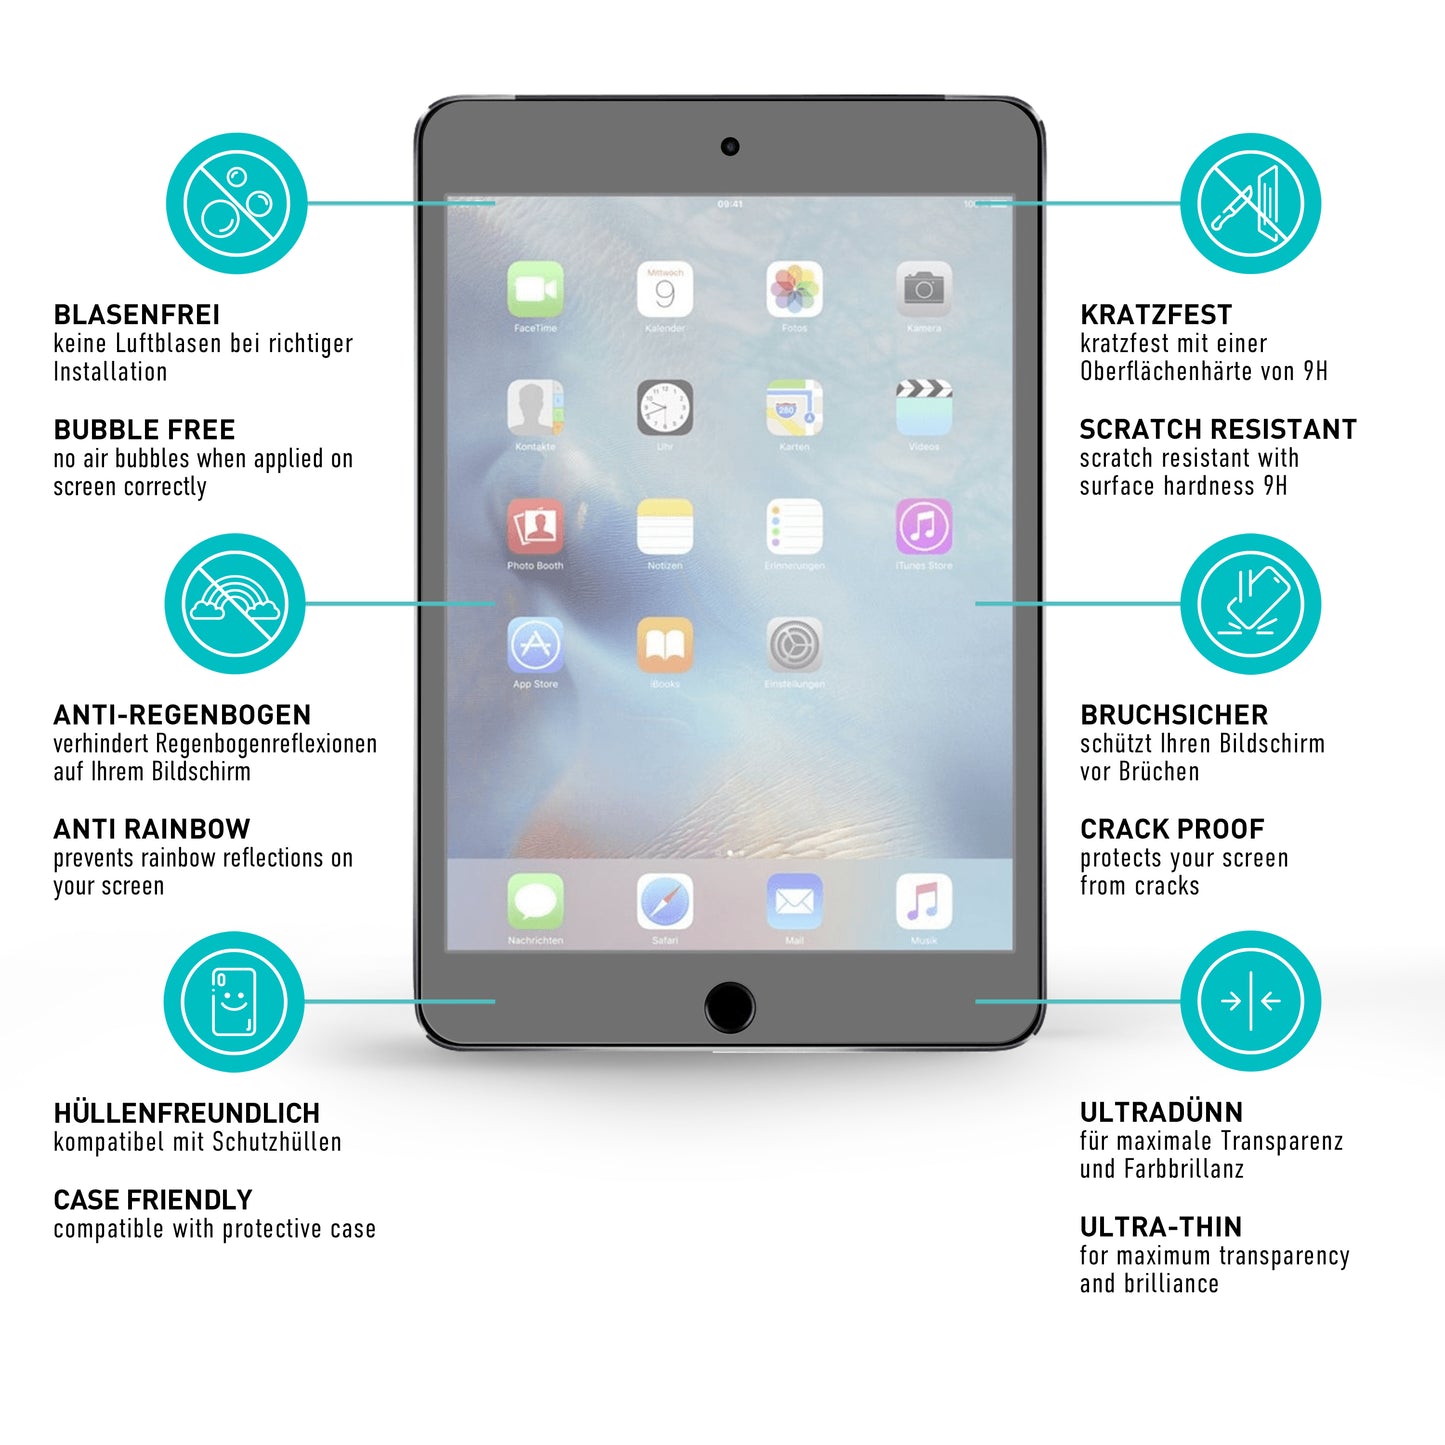 smartect Schutzglas Matt für iPad mini 5 / mini 4, 2 Stück